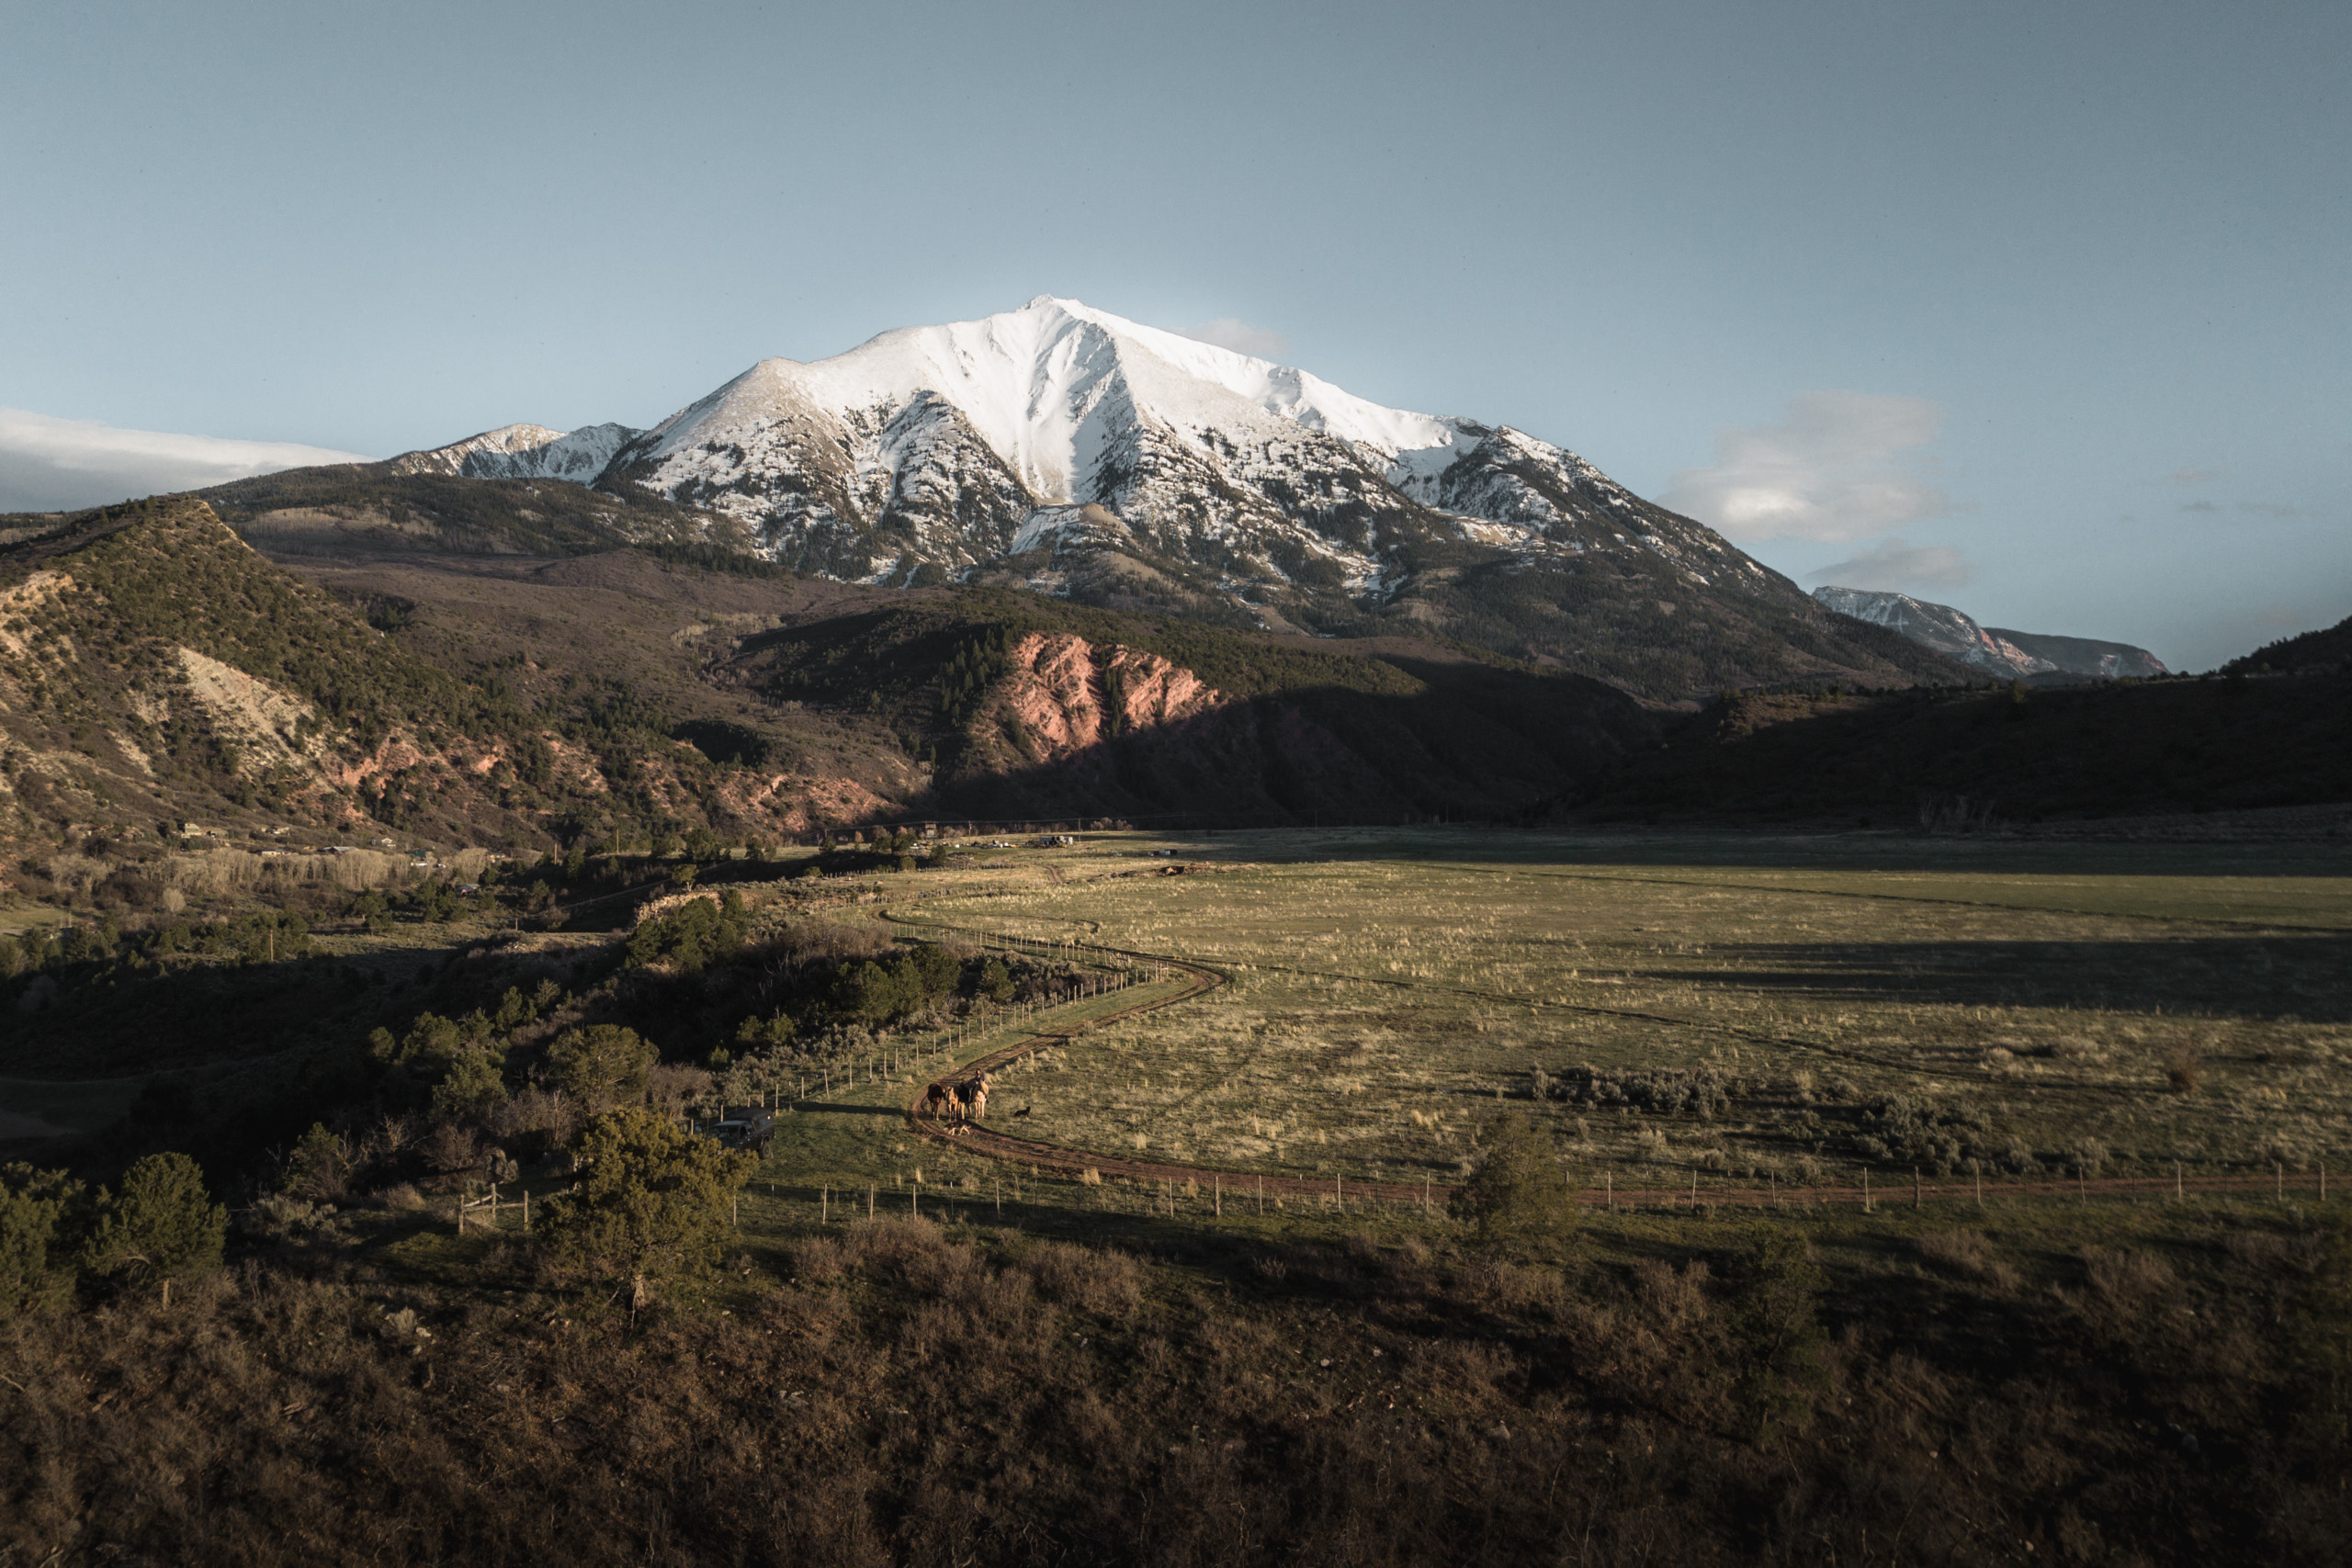 Drone shot of Mount Sopris, Colorado